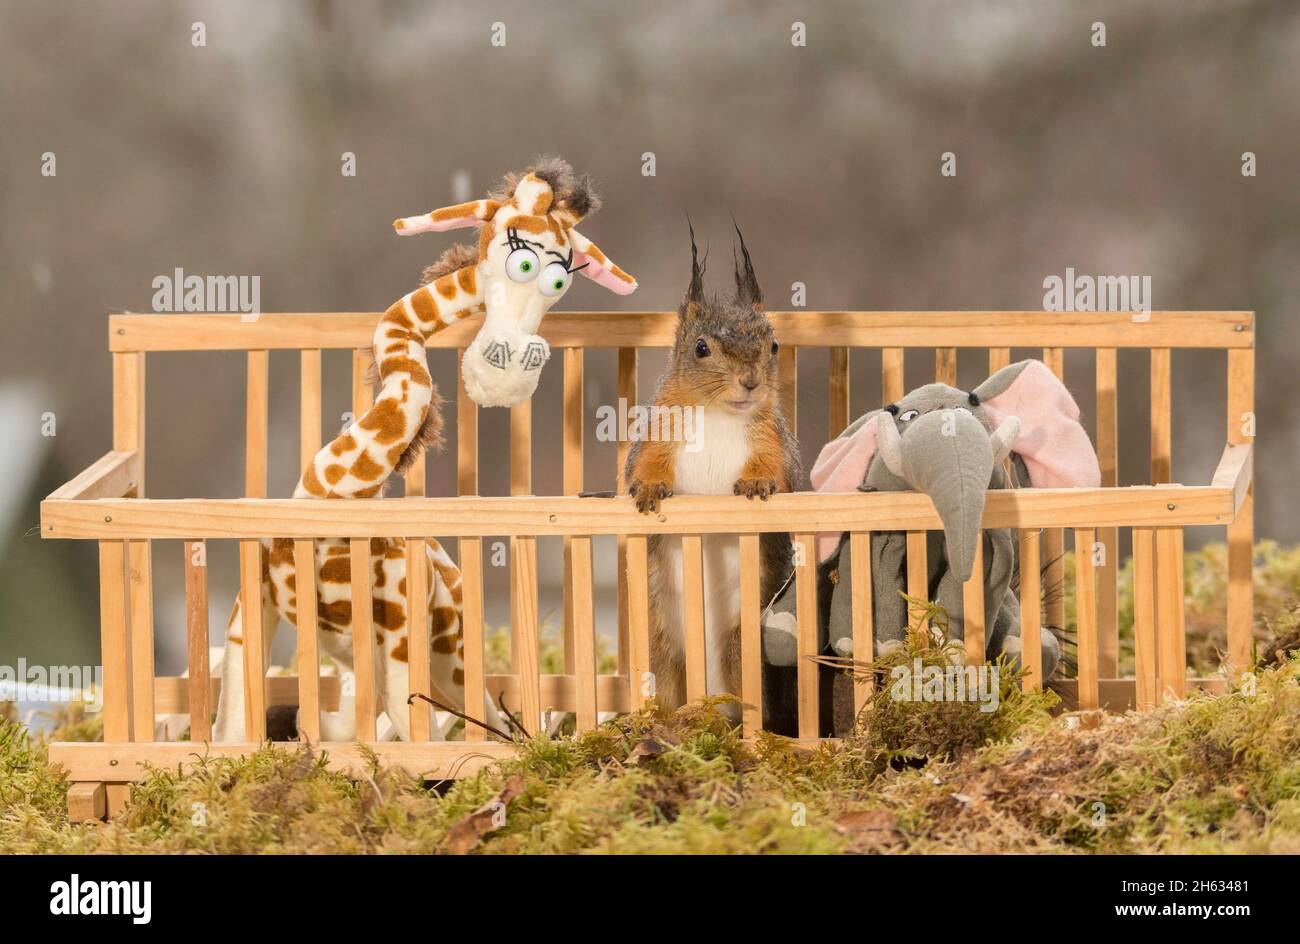 Close up of red squirrel entre une girafe et l'éléphant dans une cage Banque D'Images